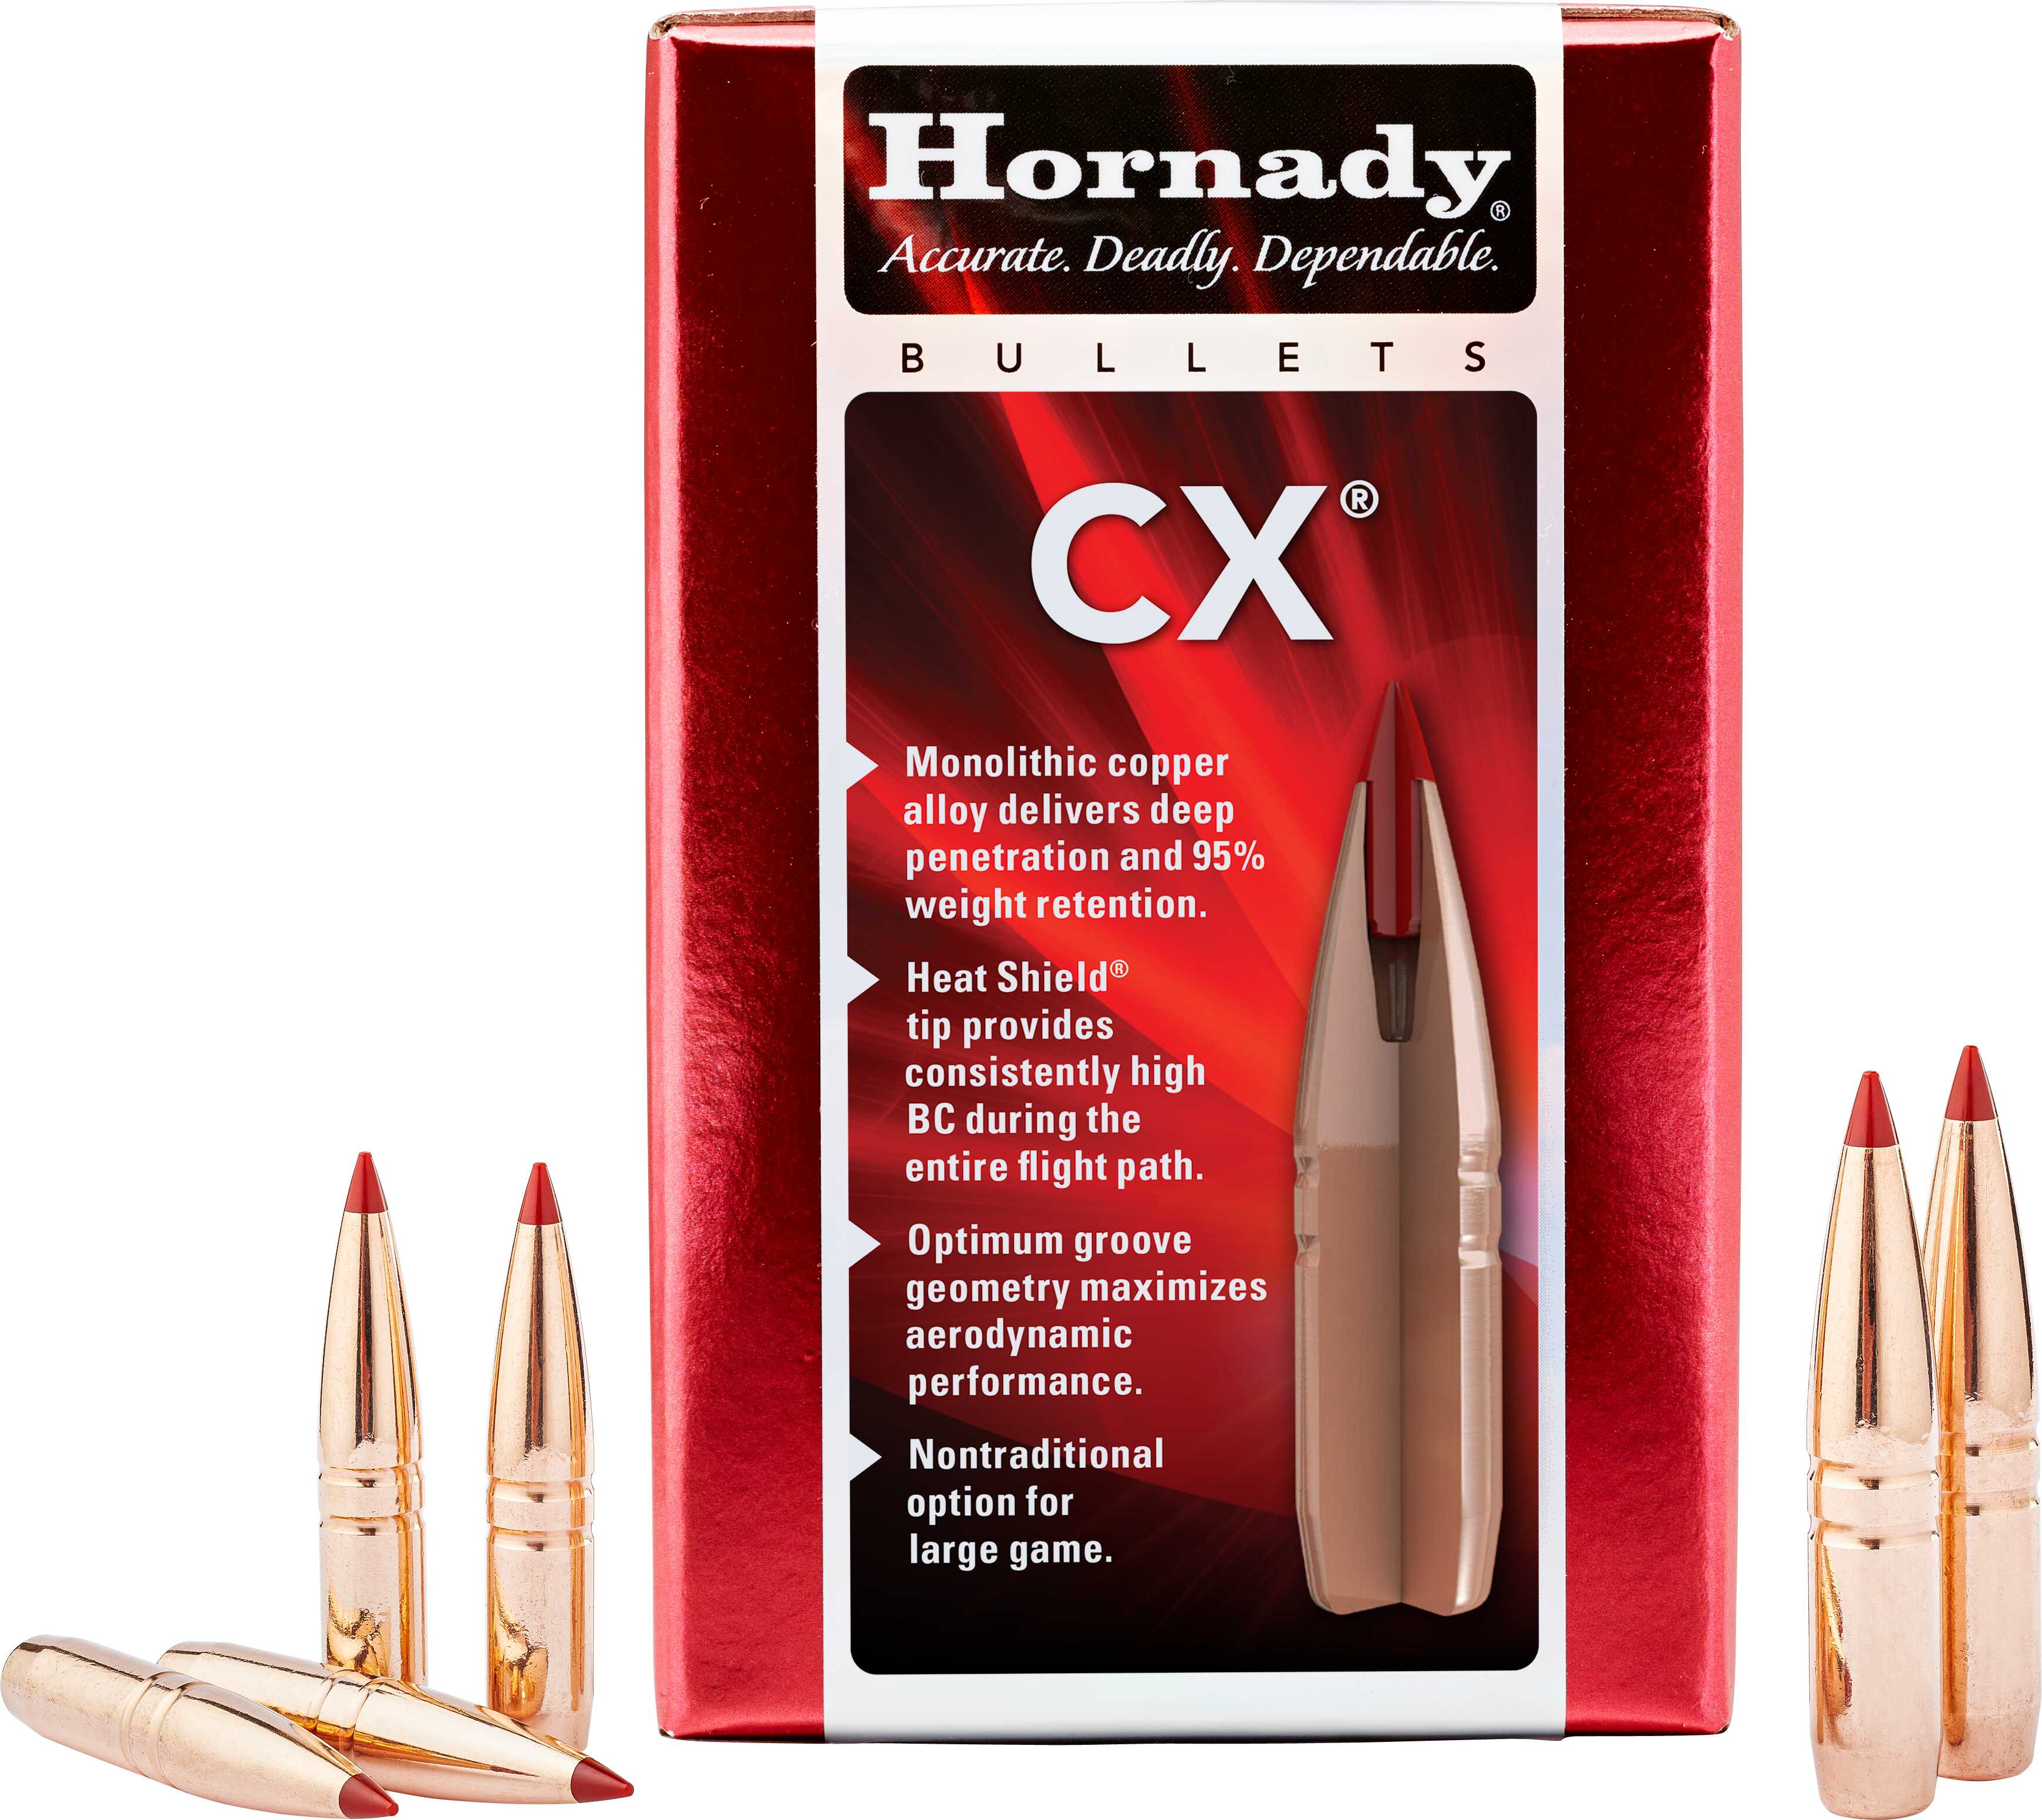 Hornady CX Bullets 6mm .243 80 gr. CX Model: 243704